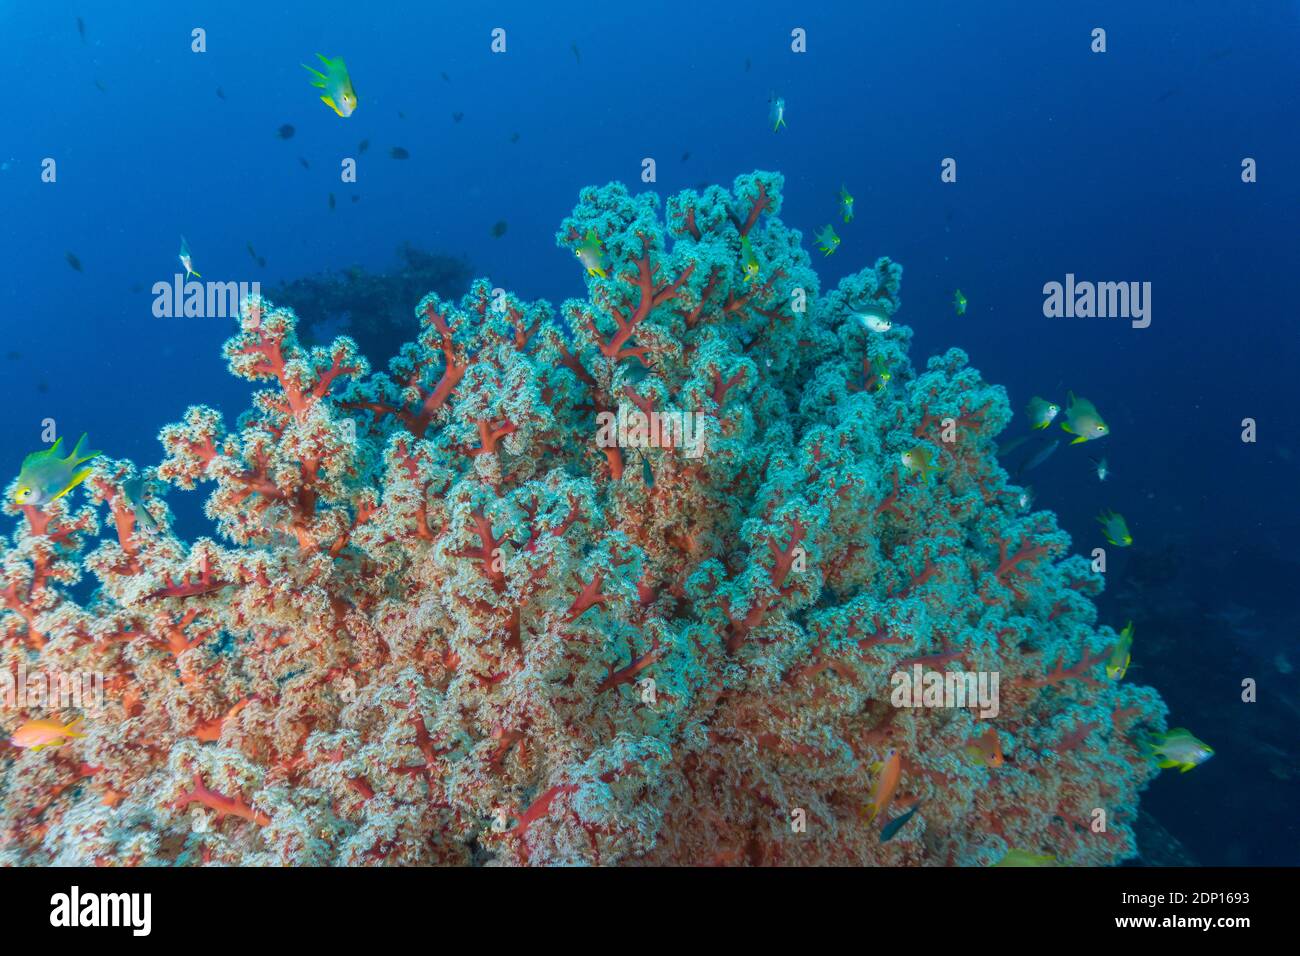 Farbenfrohe, weiche Korallen in Balis Unterwasserwelt (Fotografiert während des Tauchens) Stockfoto